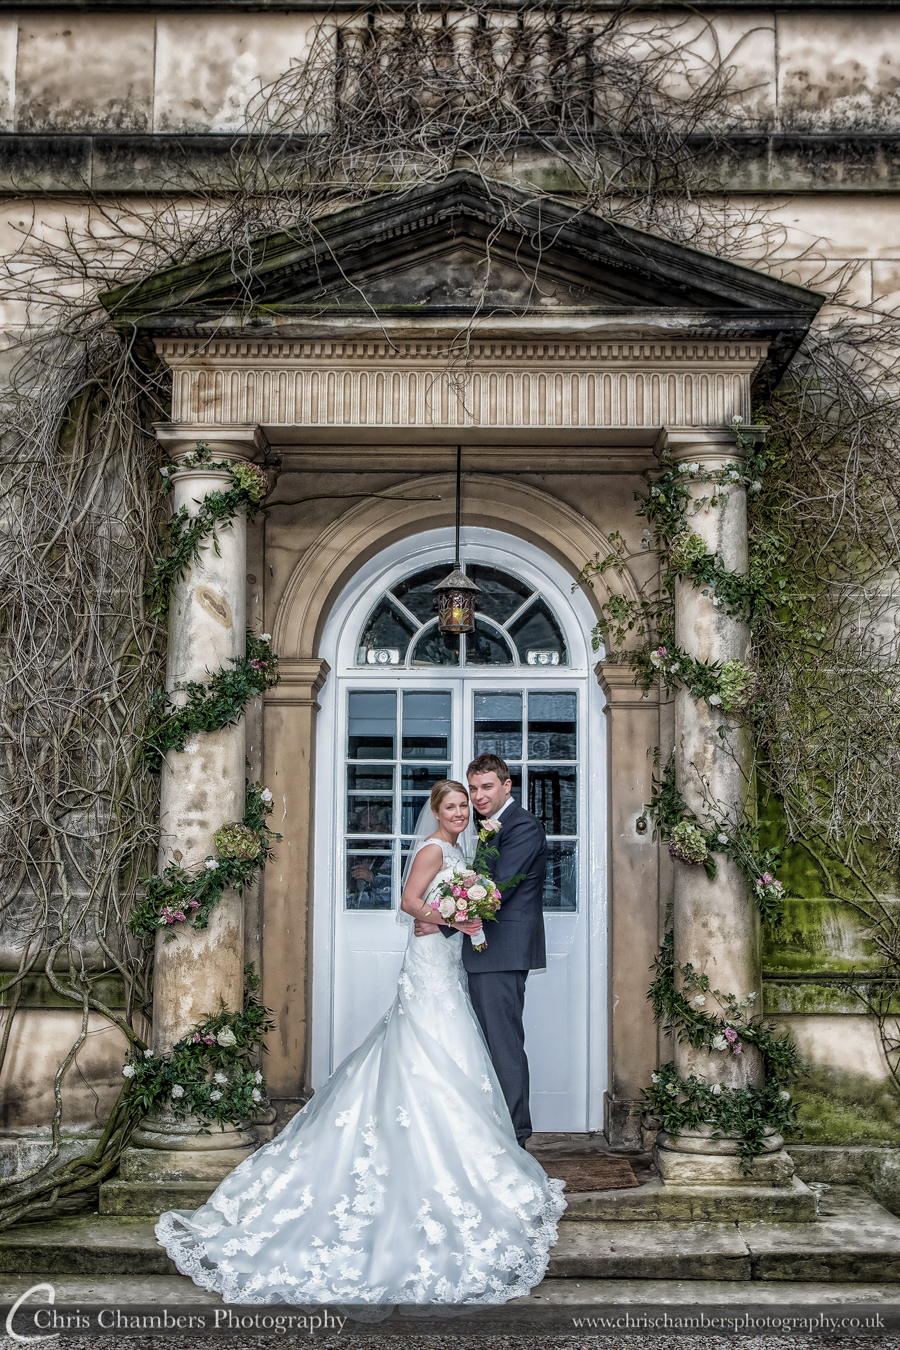 Middleton Lodge Wedding Photography | Middleton Lodge Wedding Photographer | Award winning wedding photographer Chris Chambers | Middleton Lodge Wedding Photographs | North Yorkshire Wedding Photographer